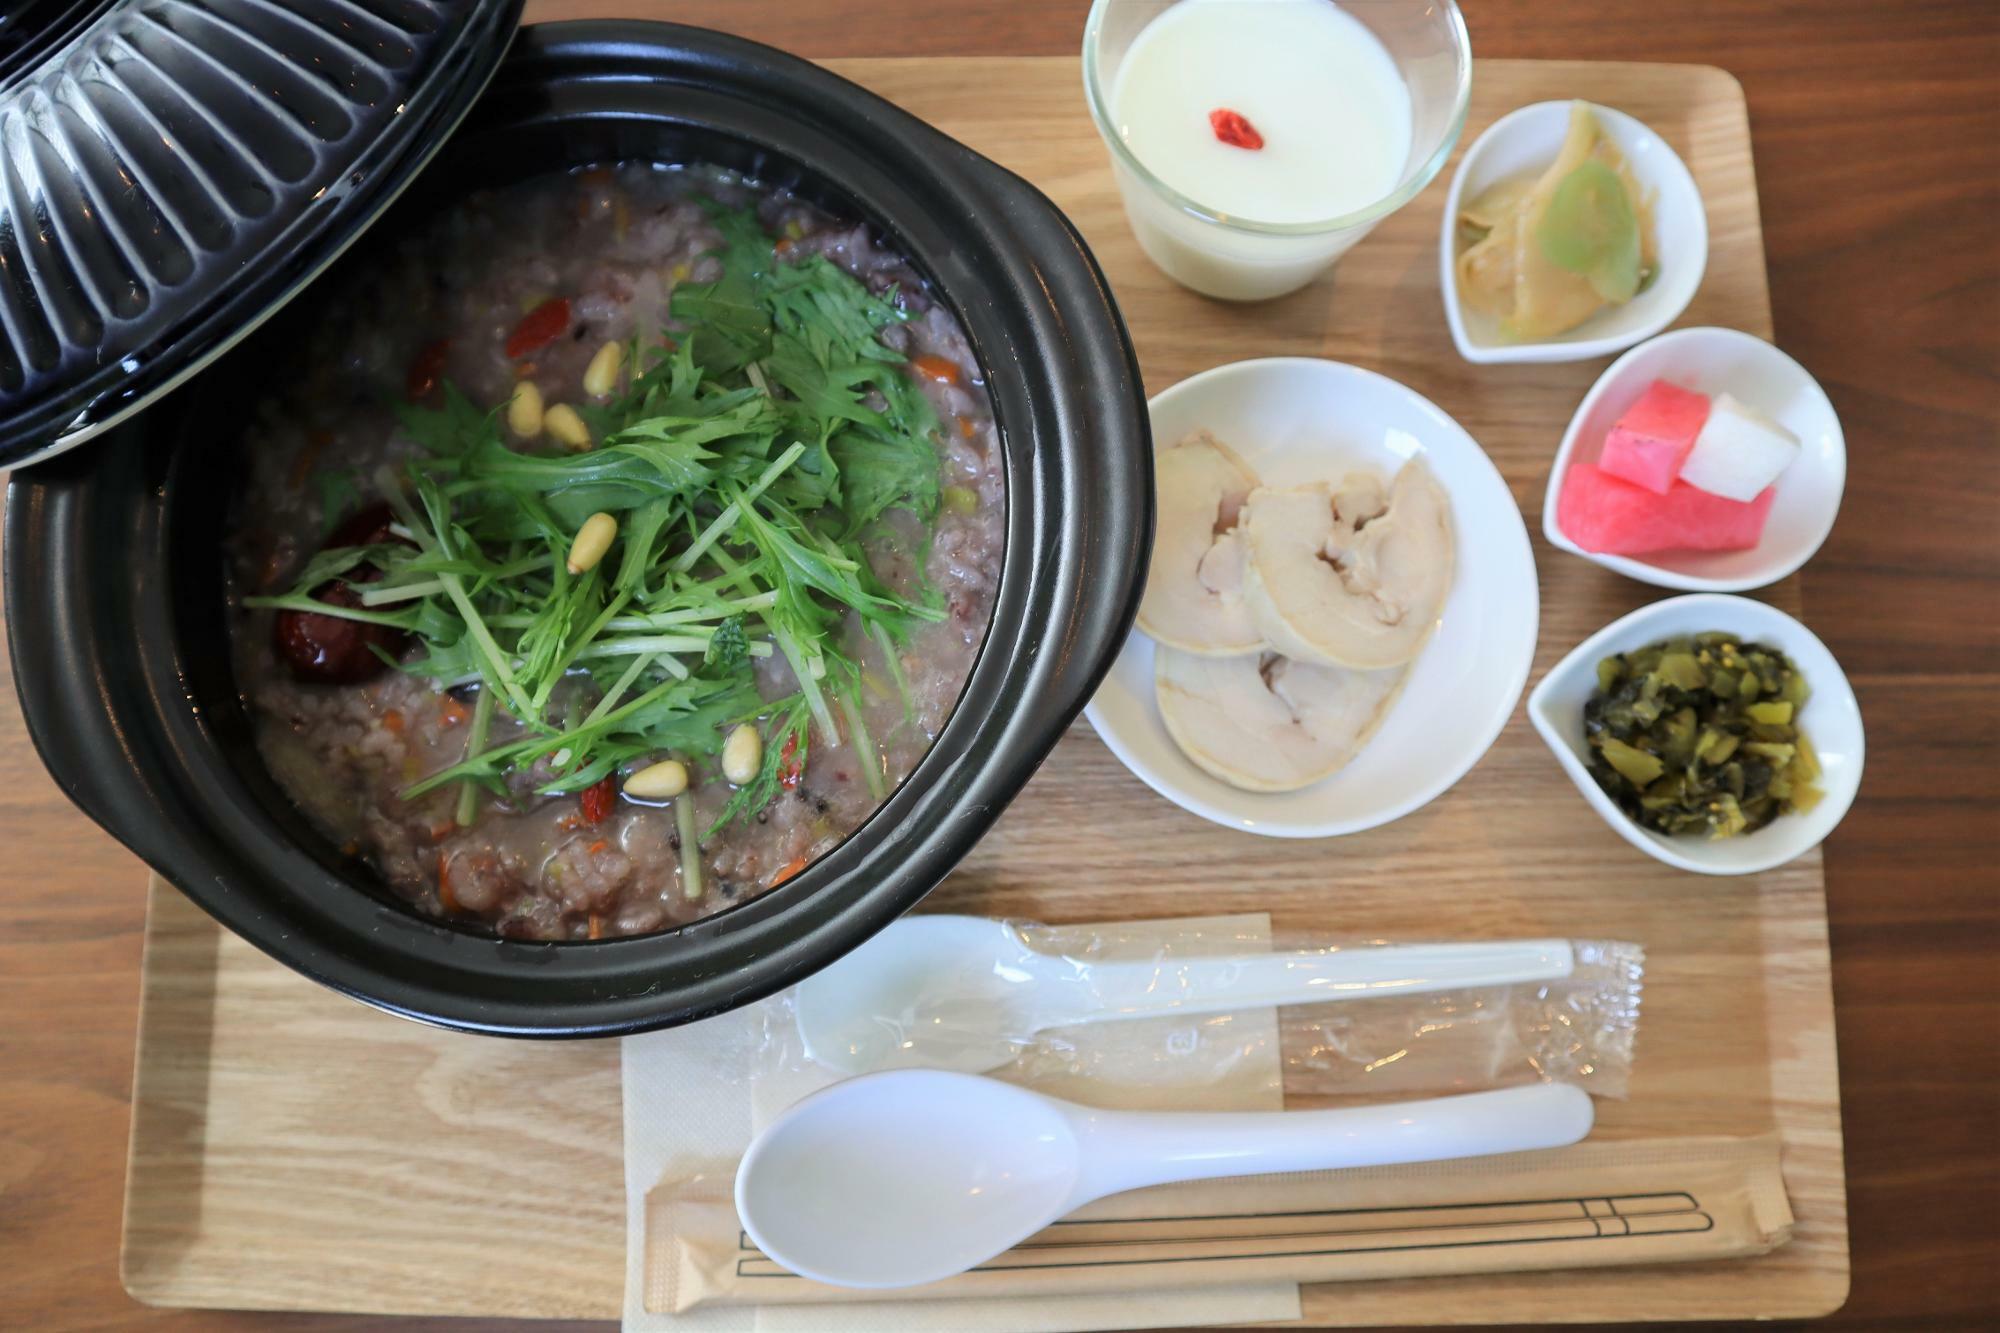 内容：お粥、ごま高菜、フレッシュ搾菜、北海道産野菜を使用した自家製ピクルス、自家製鶏チャーシュー、デザート（杏仁豆腐）